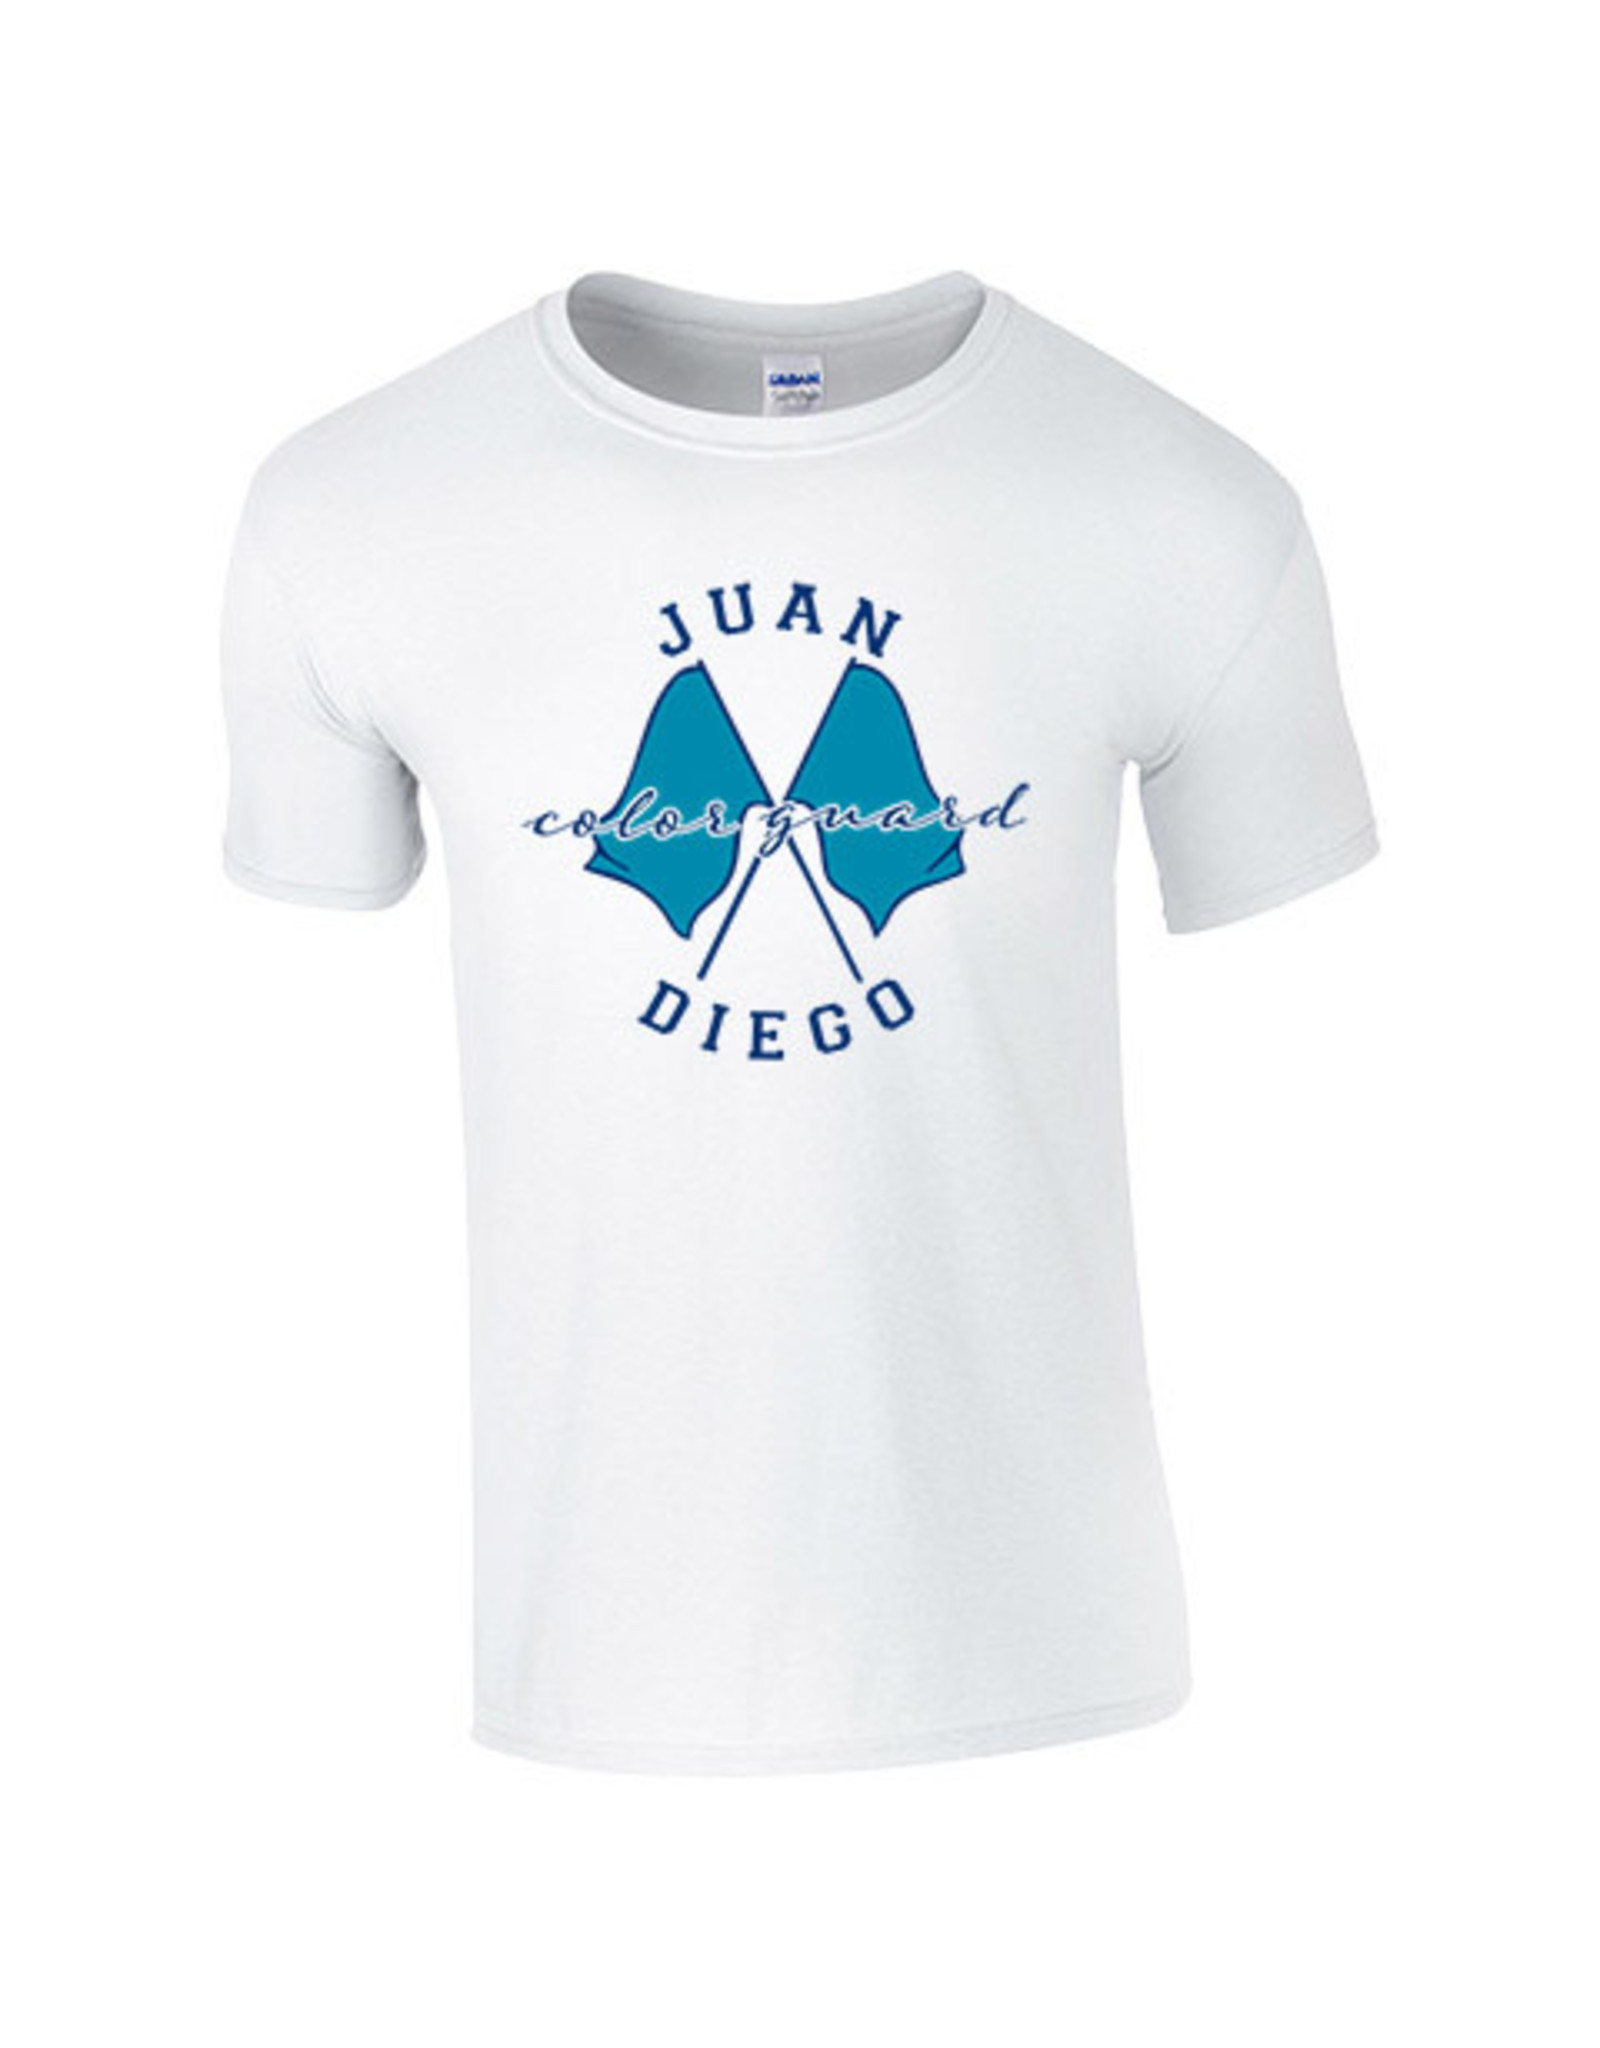 NON-UNIFORM JD Color Guard Flags Unisex T-Shirt